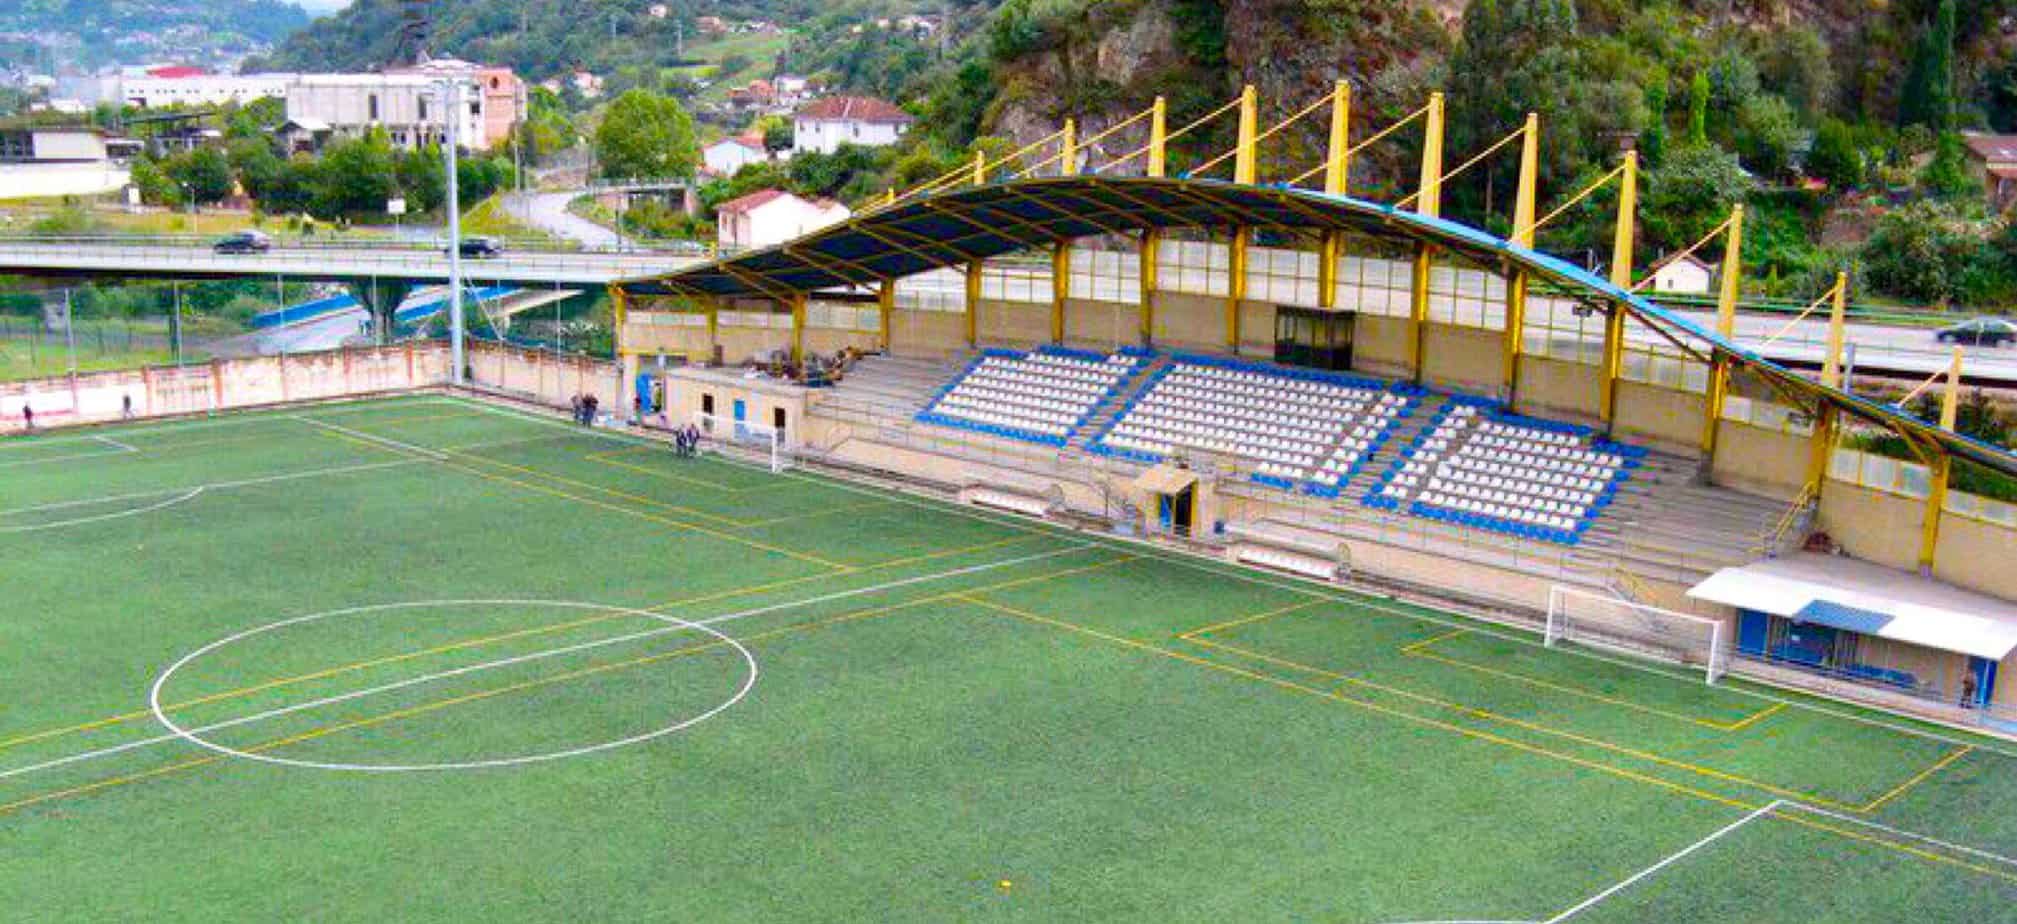 Flin.pro - Patrocinador oficial del Club de Fútbol de El Entrego en Asturias